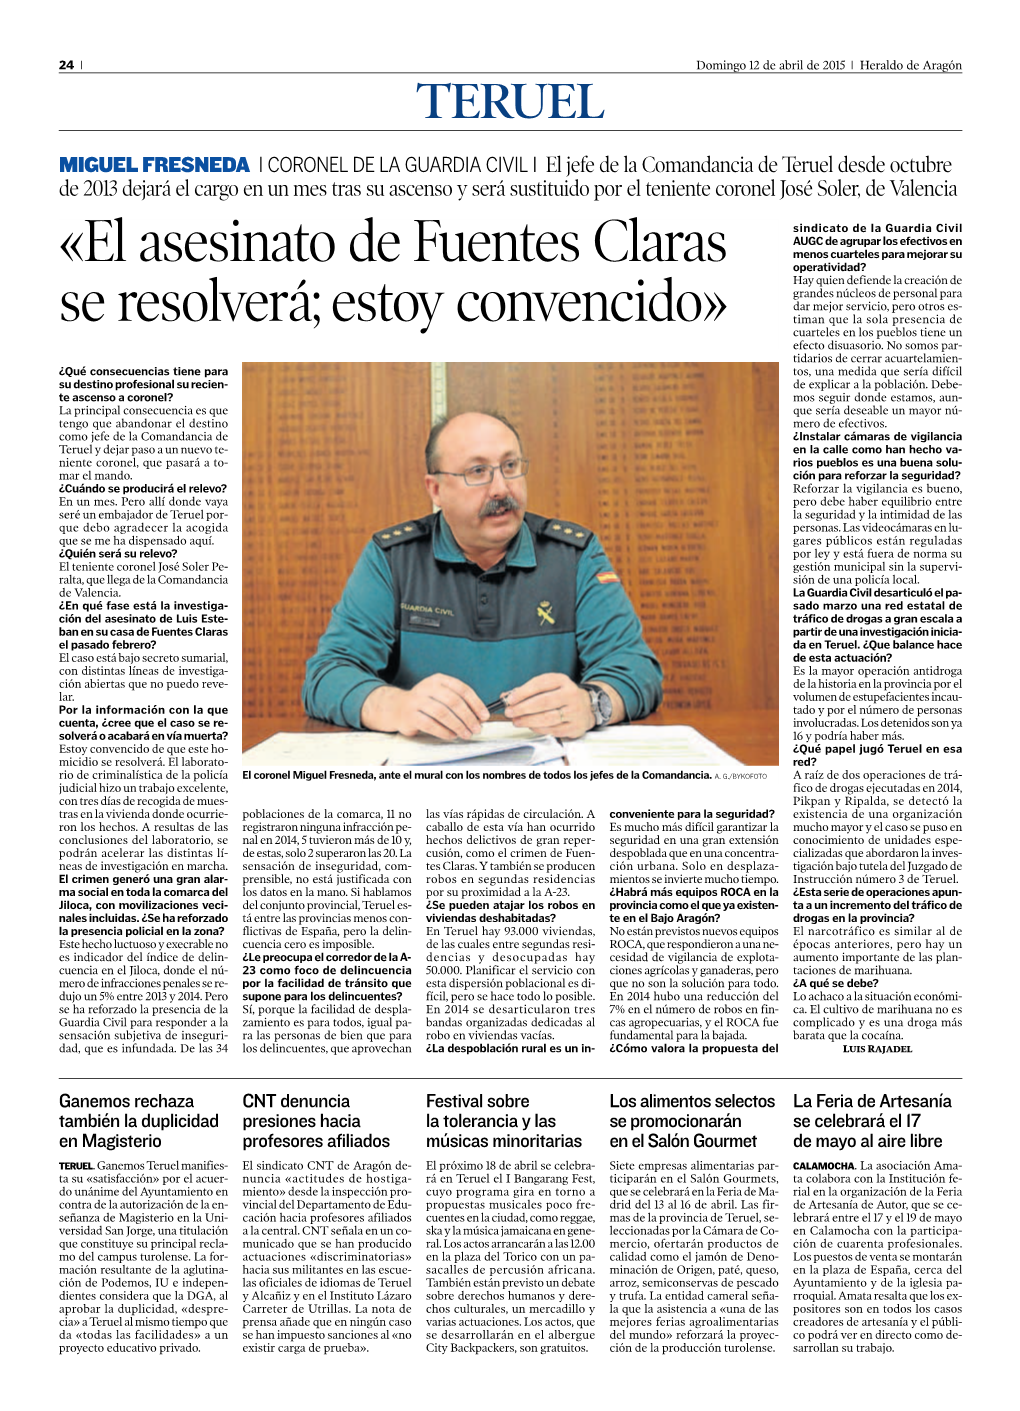 «El Asesinato De Fuentes Claras Se Resolverá; Estoy Convencido»